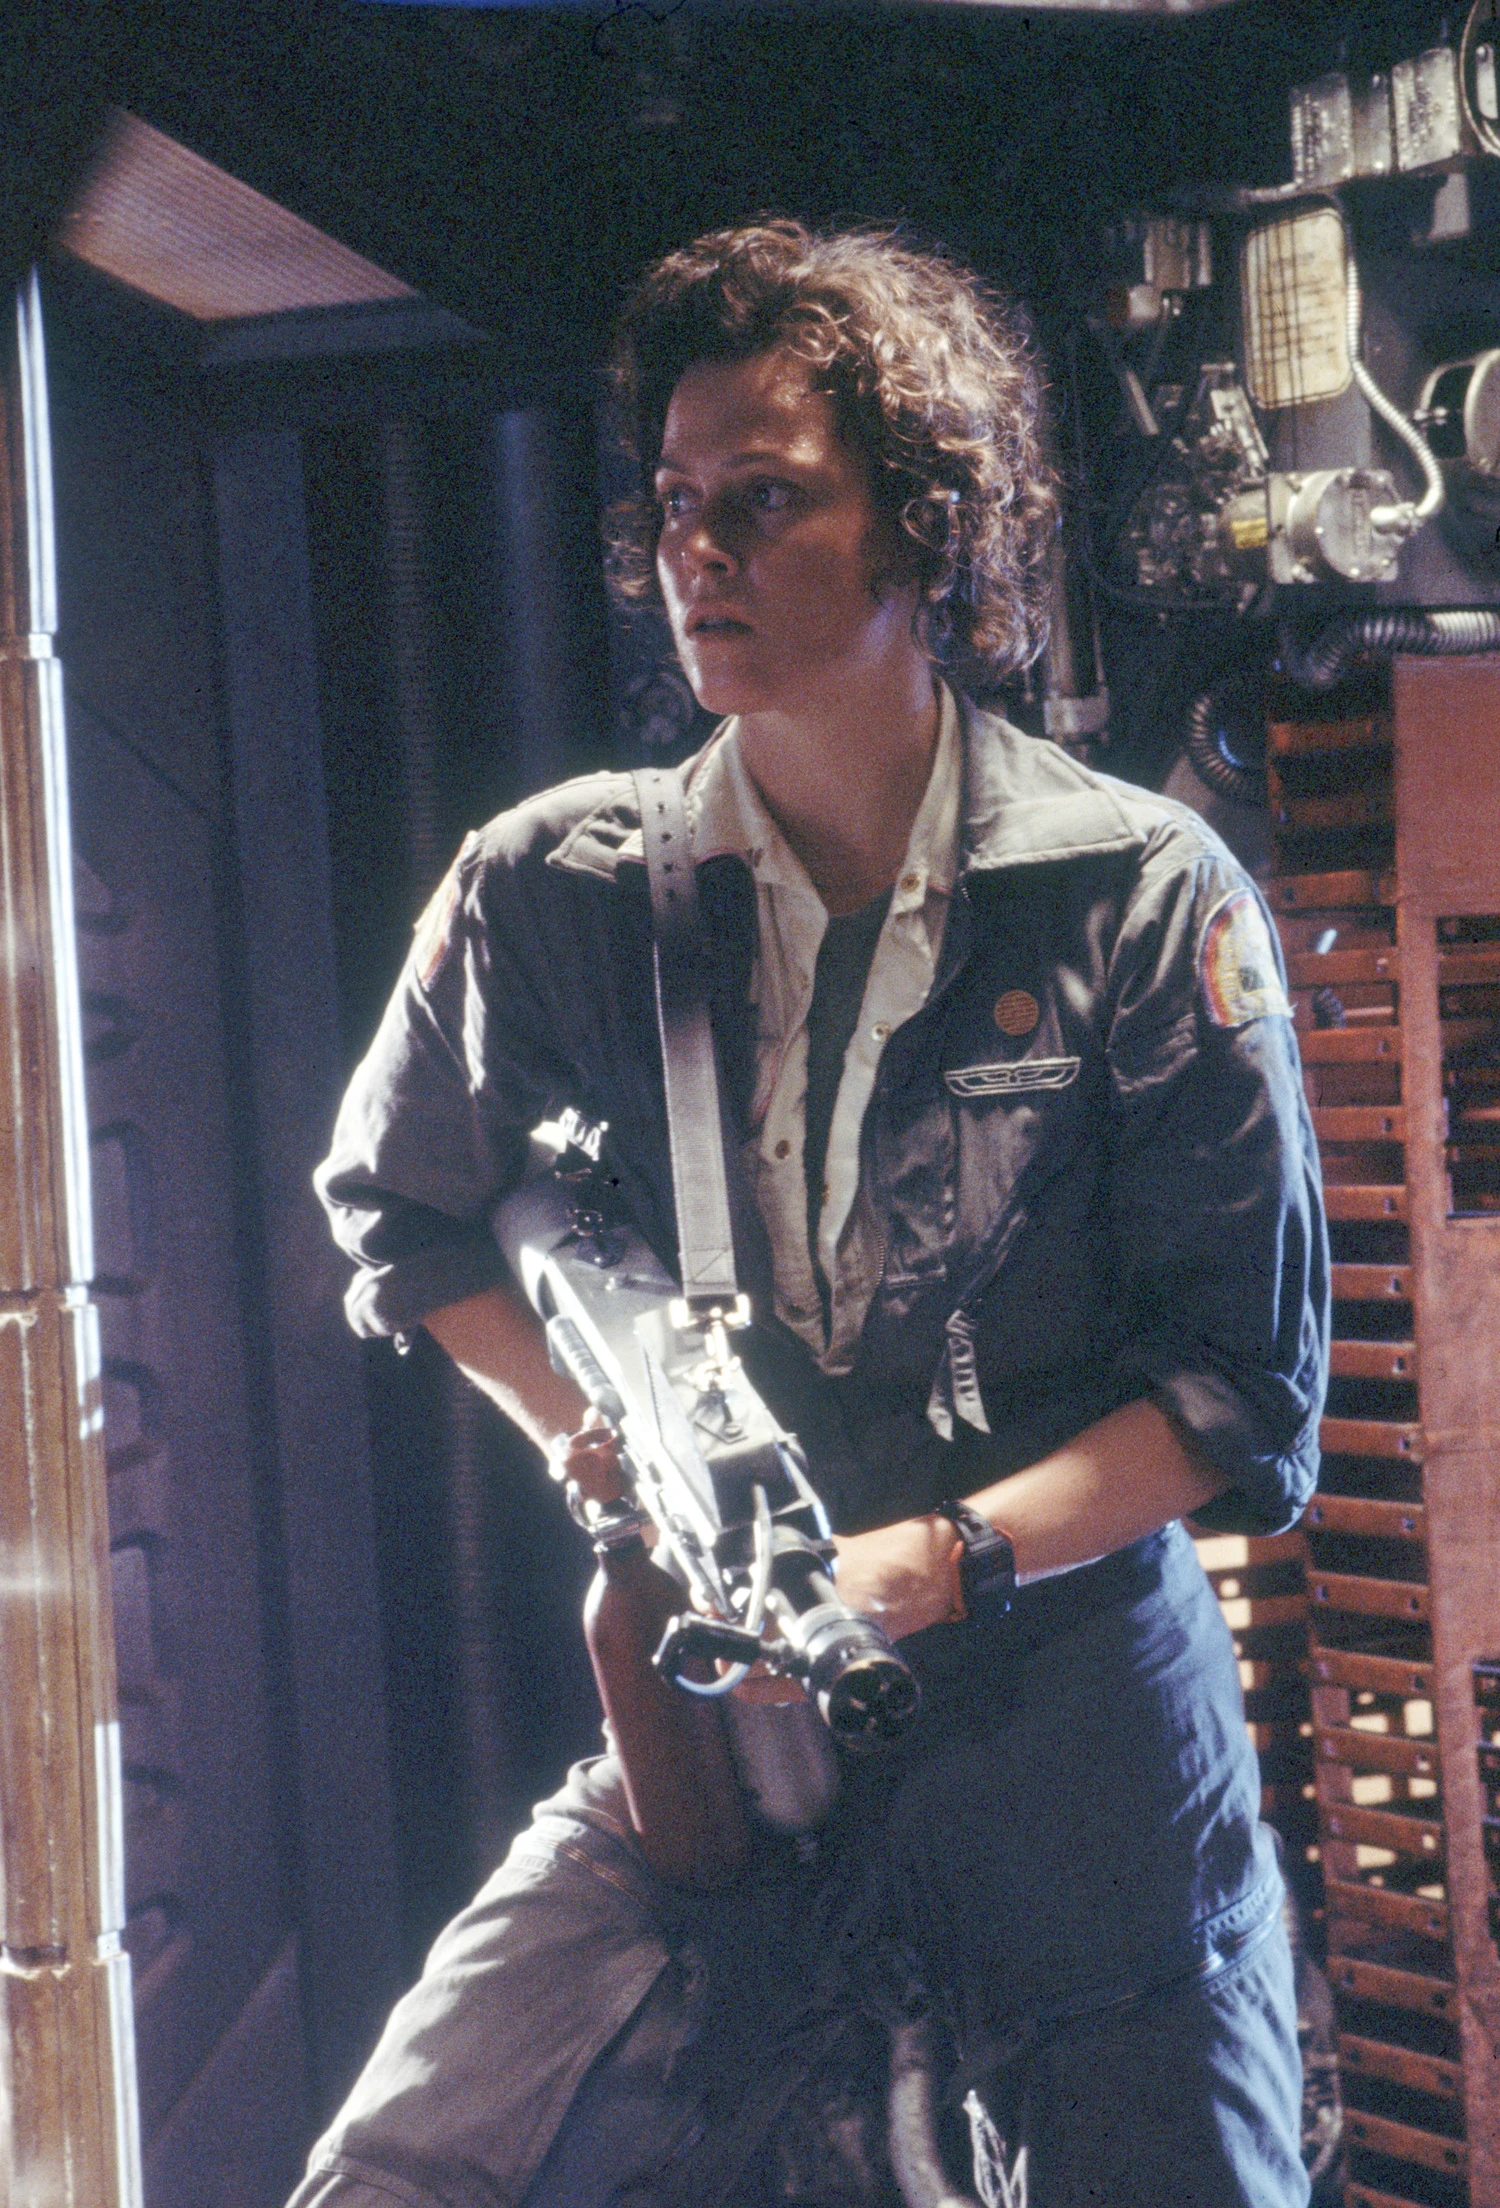 Sigourney Weaver as Ellen Ripley